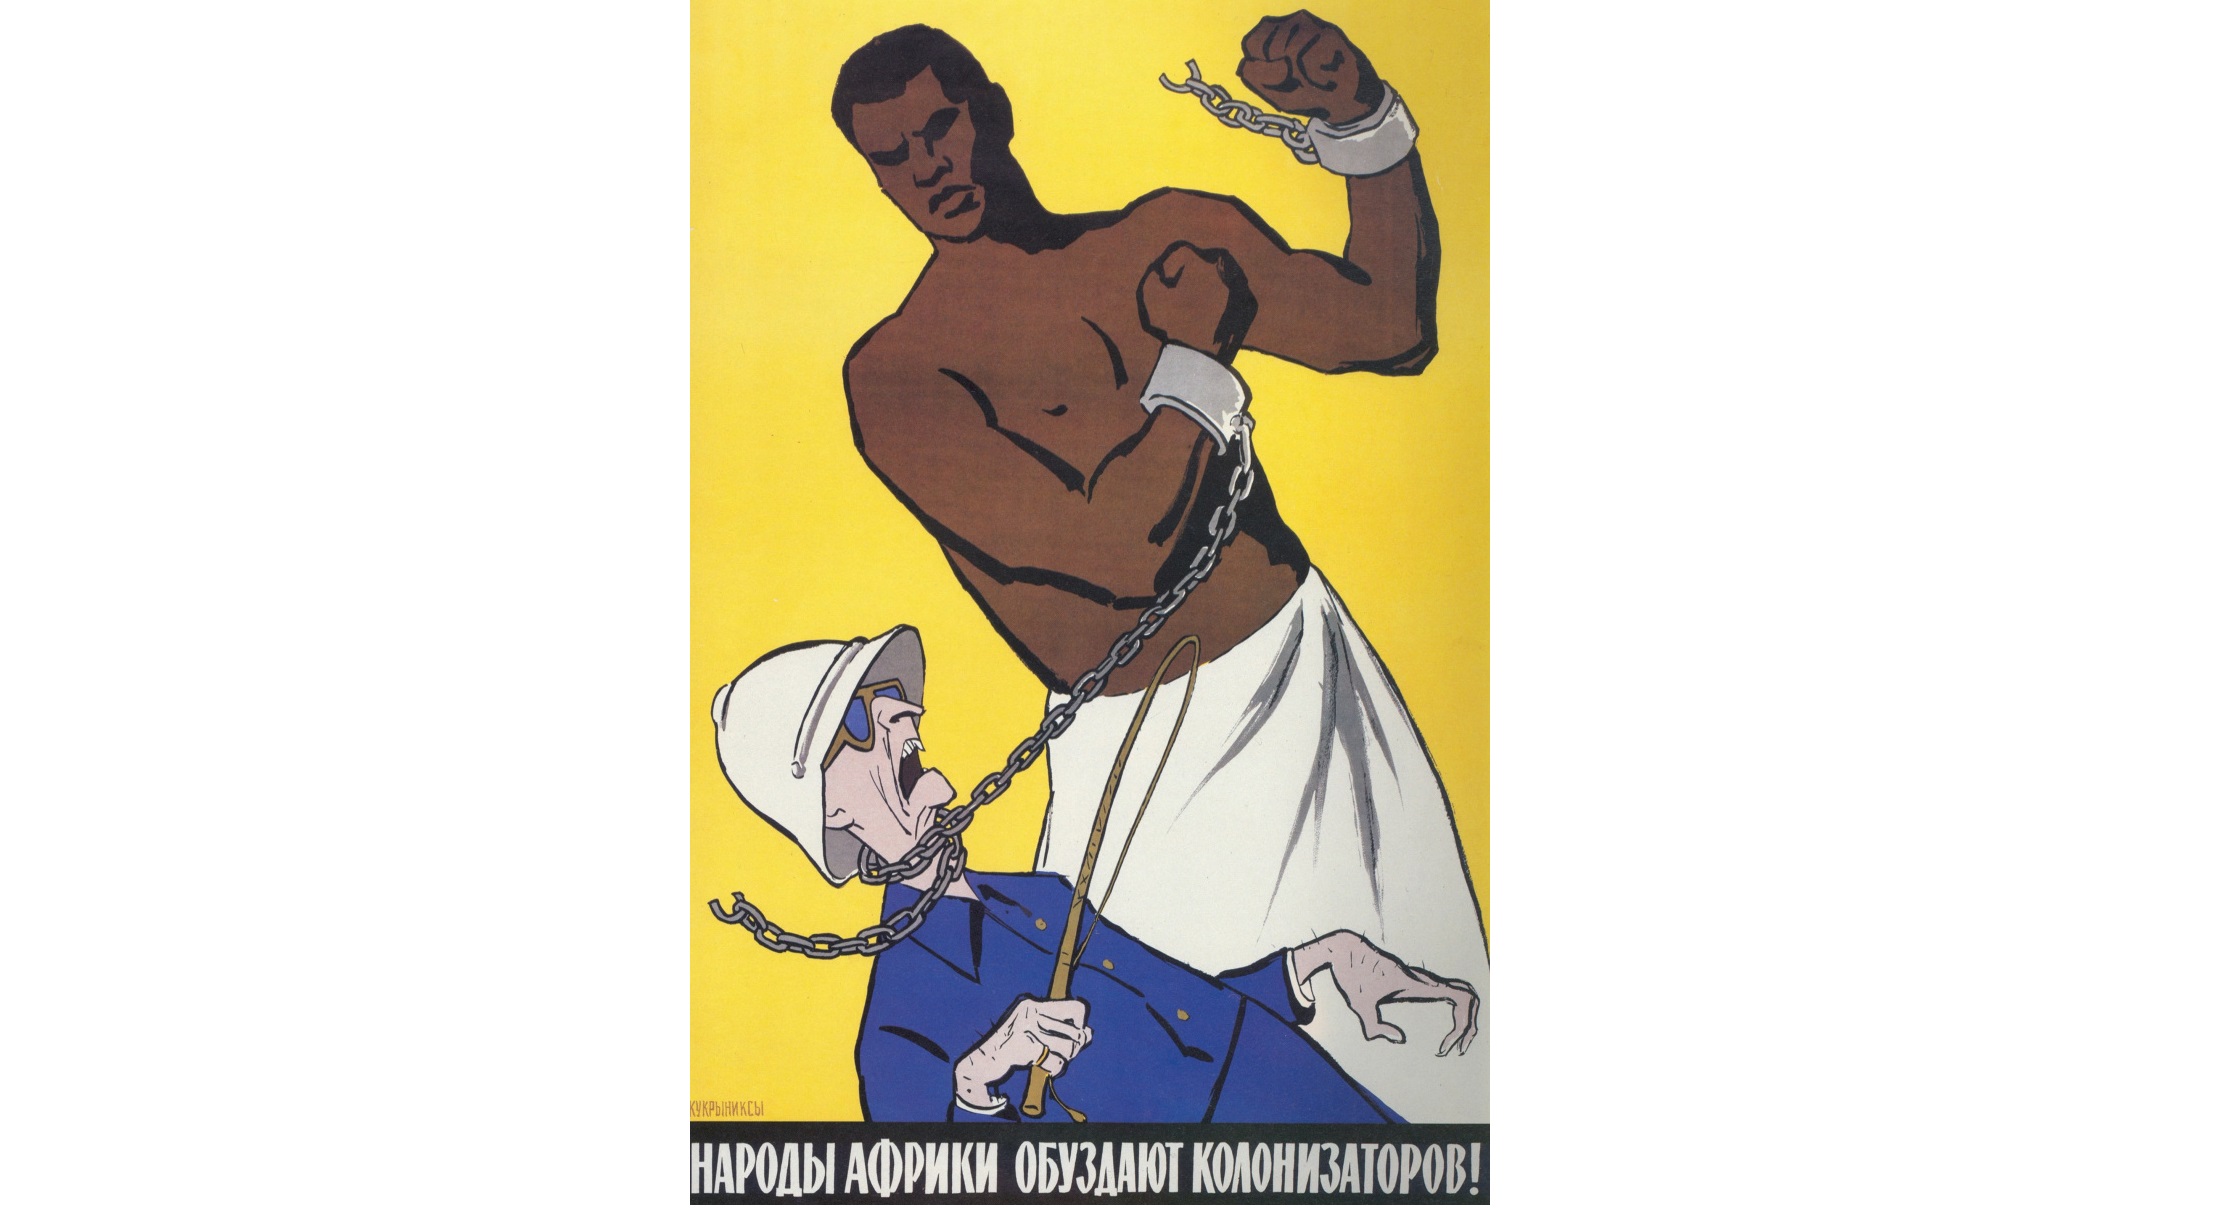 Макрон на унитазе. Плакат колонизаторов к ответу. Борьба с колониализмом плакат. Колониальный плакат огромный мужик. Африканская пропаганда.